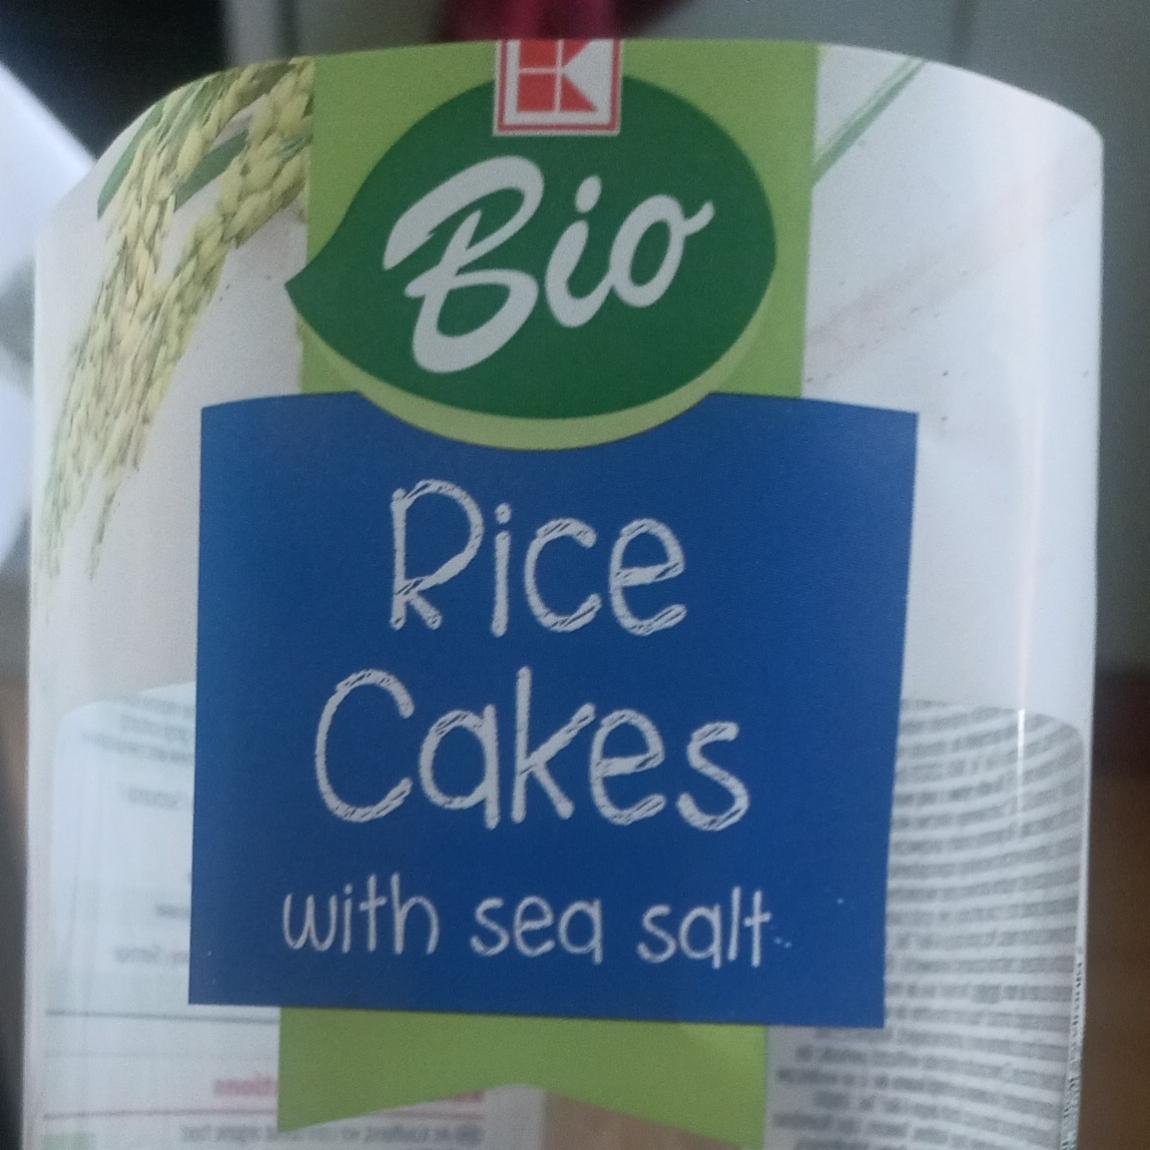 Zdjęcia - Rice cakes with sea salt K-classic